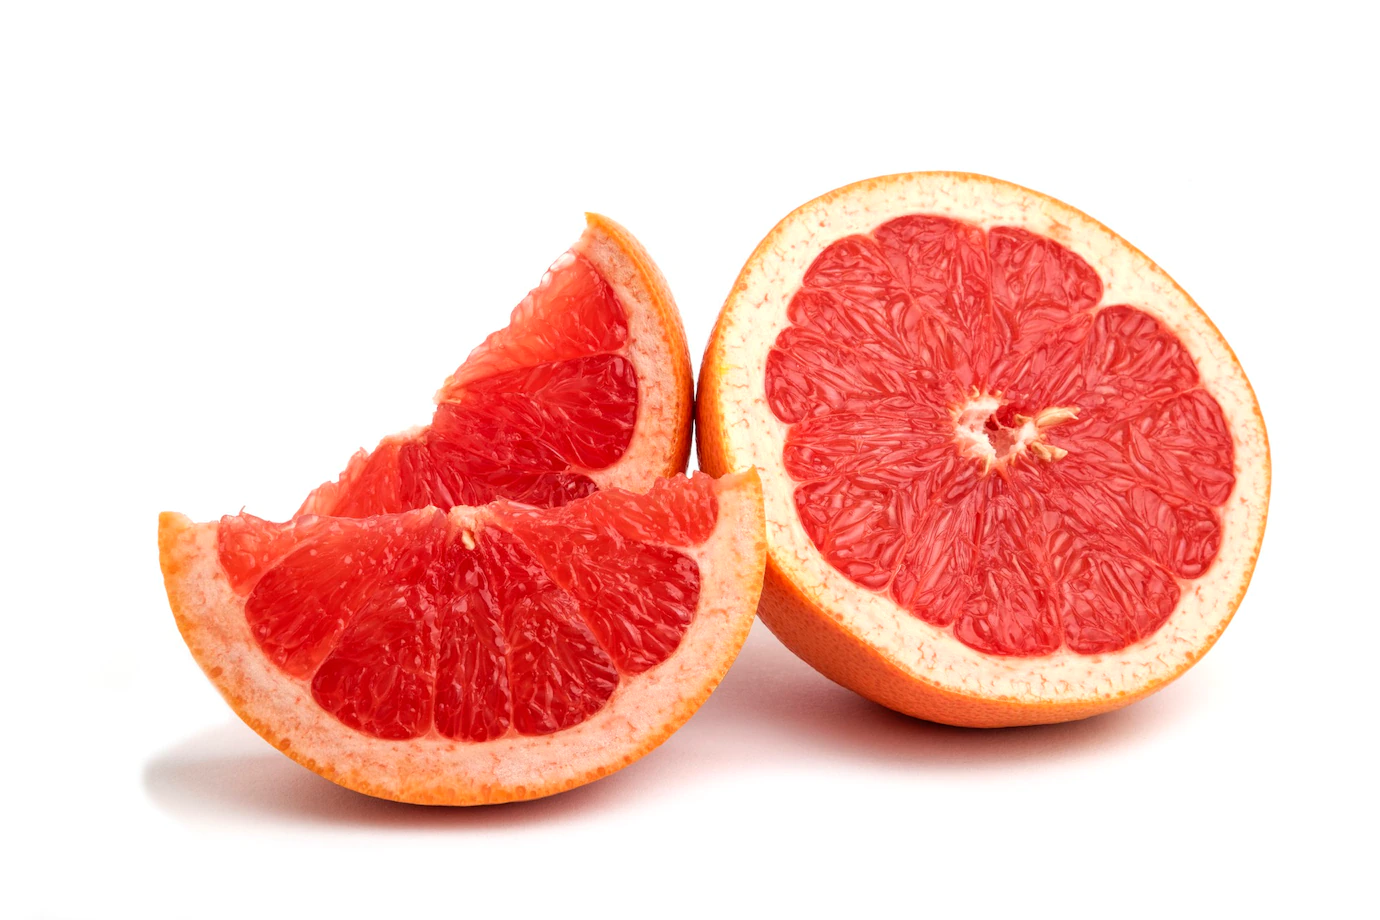 grapefruit-isolated-whole-sliced_114579-85884